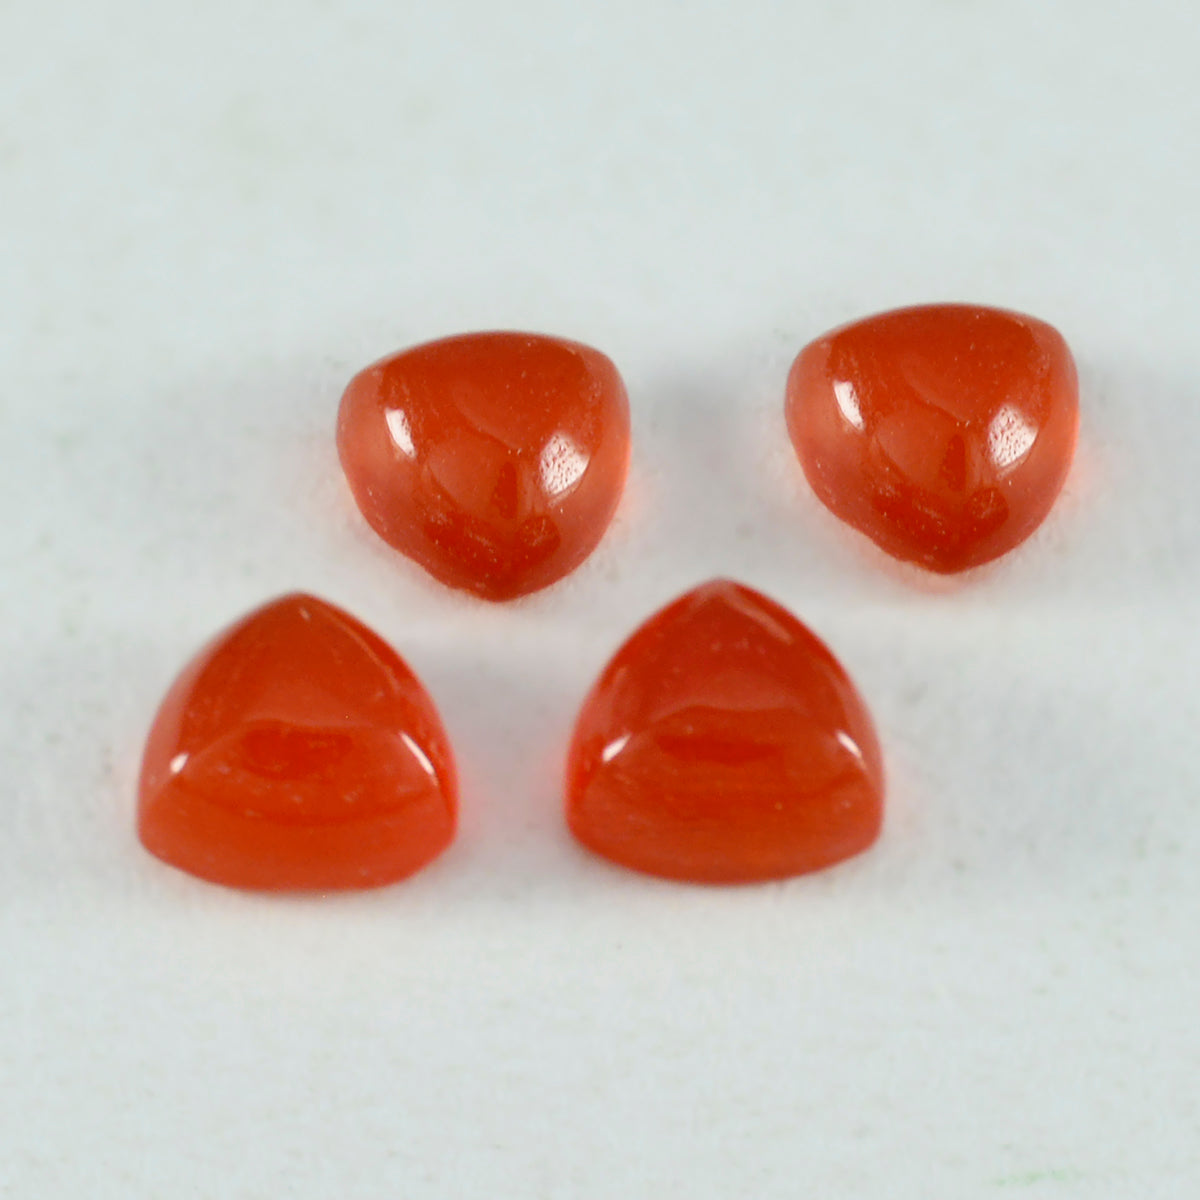 Riyogems 1 pieza cabujón de ónix rojo 11x11 mm forma de billón gemas sueltas de calidad fantástica